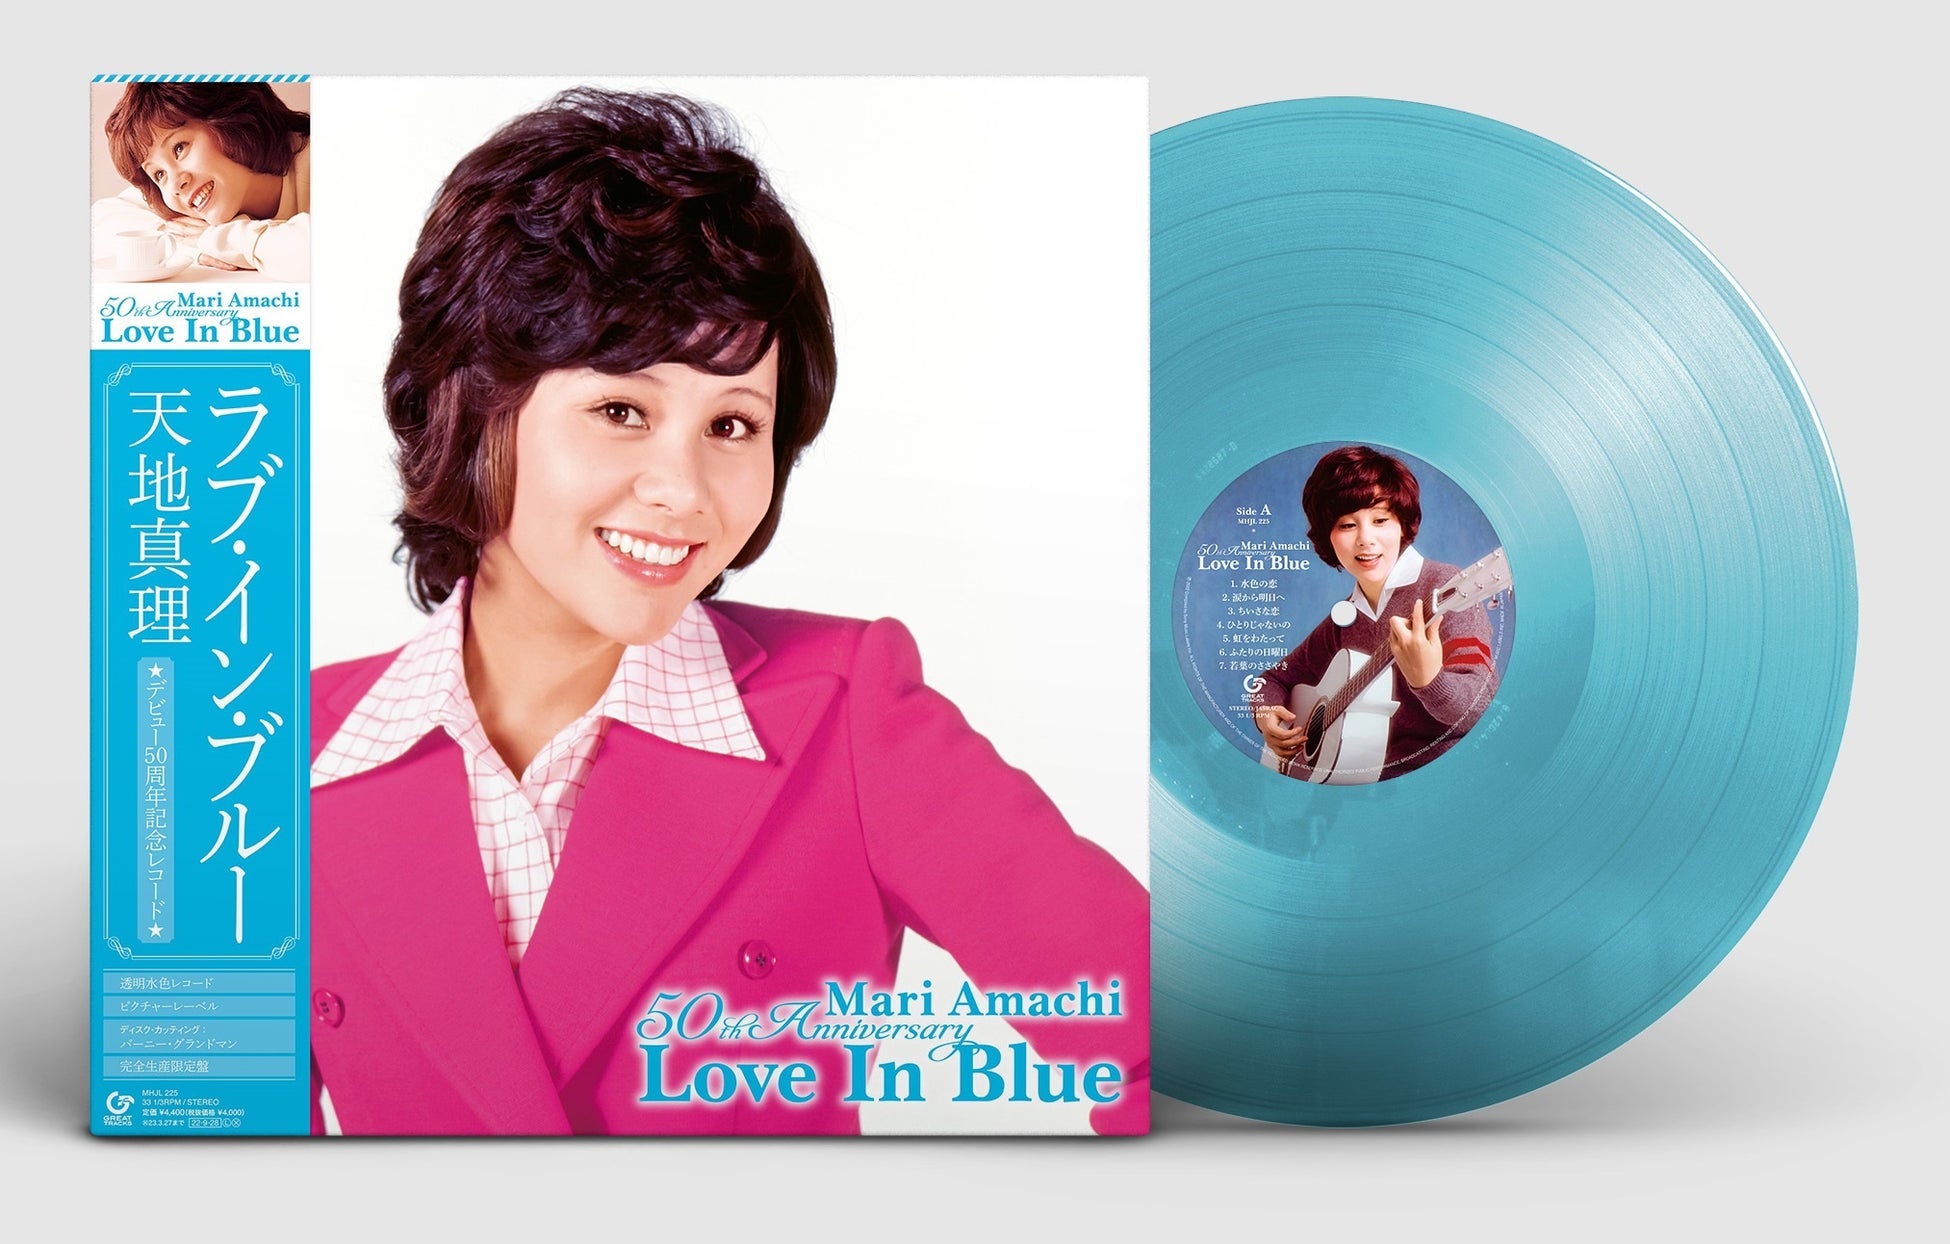 天地真理デビュー50周年記念レコード『Love In Blue』のスペシャル仕様公開。